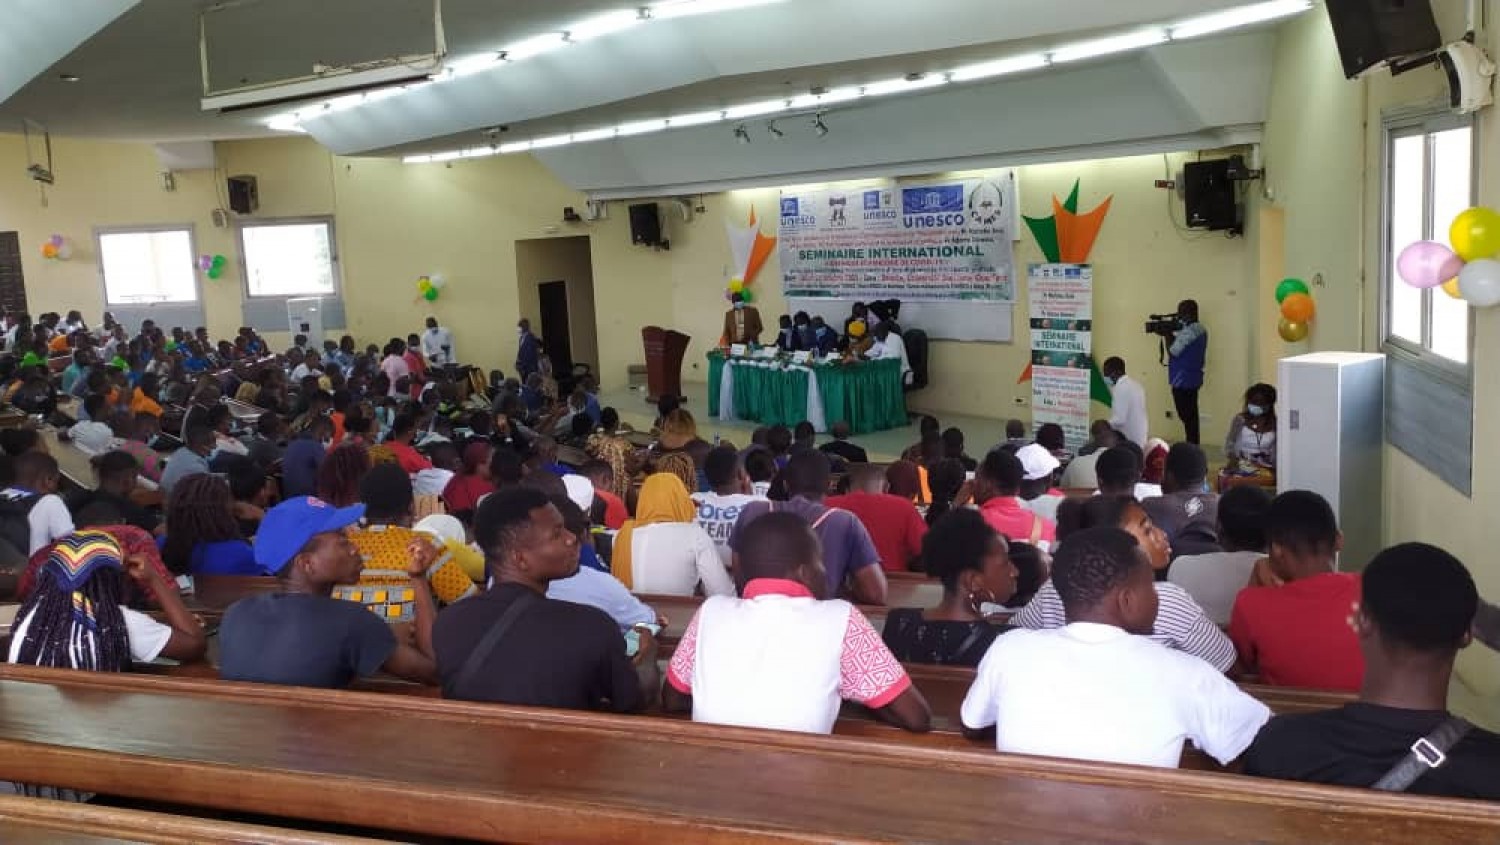 Côte d'Ivoire : Bouaké, afin de susciter des réflexions éthico-humanistes sur la Covid-19, un séminaire international organisé à l'UAO